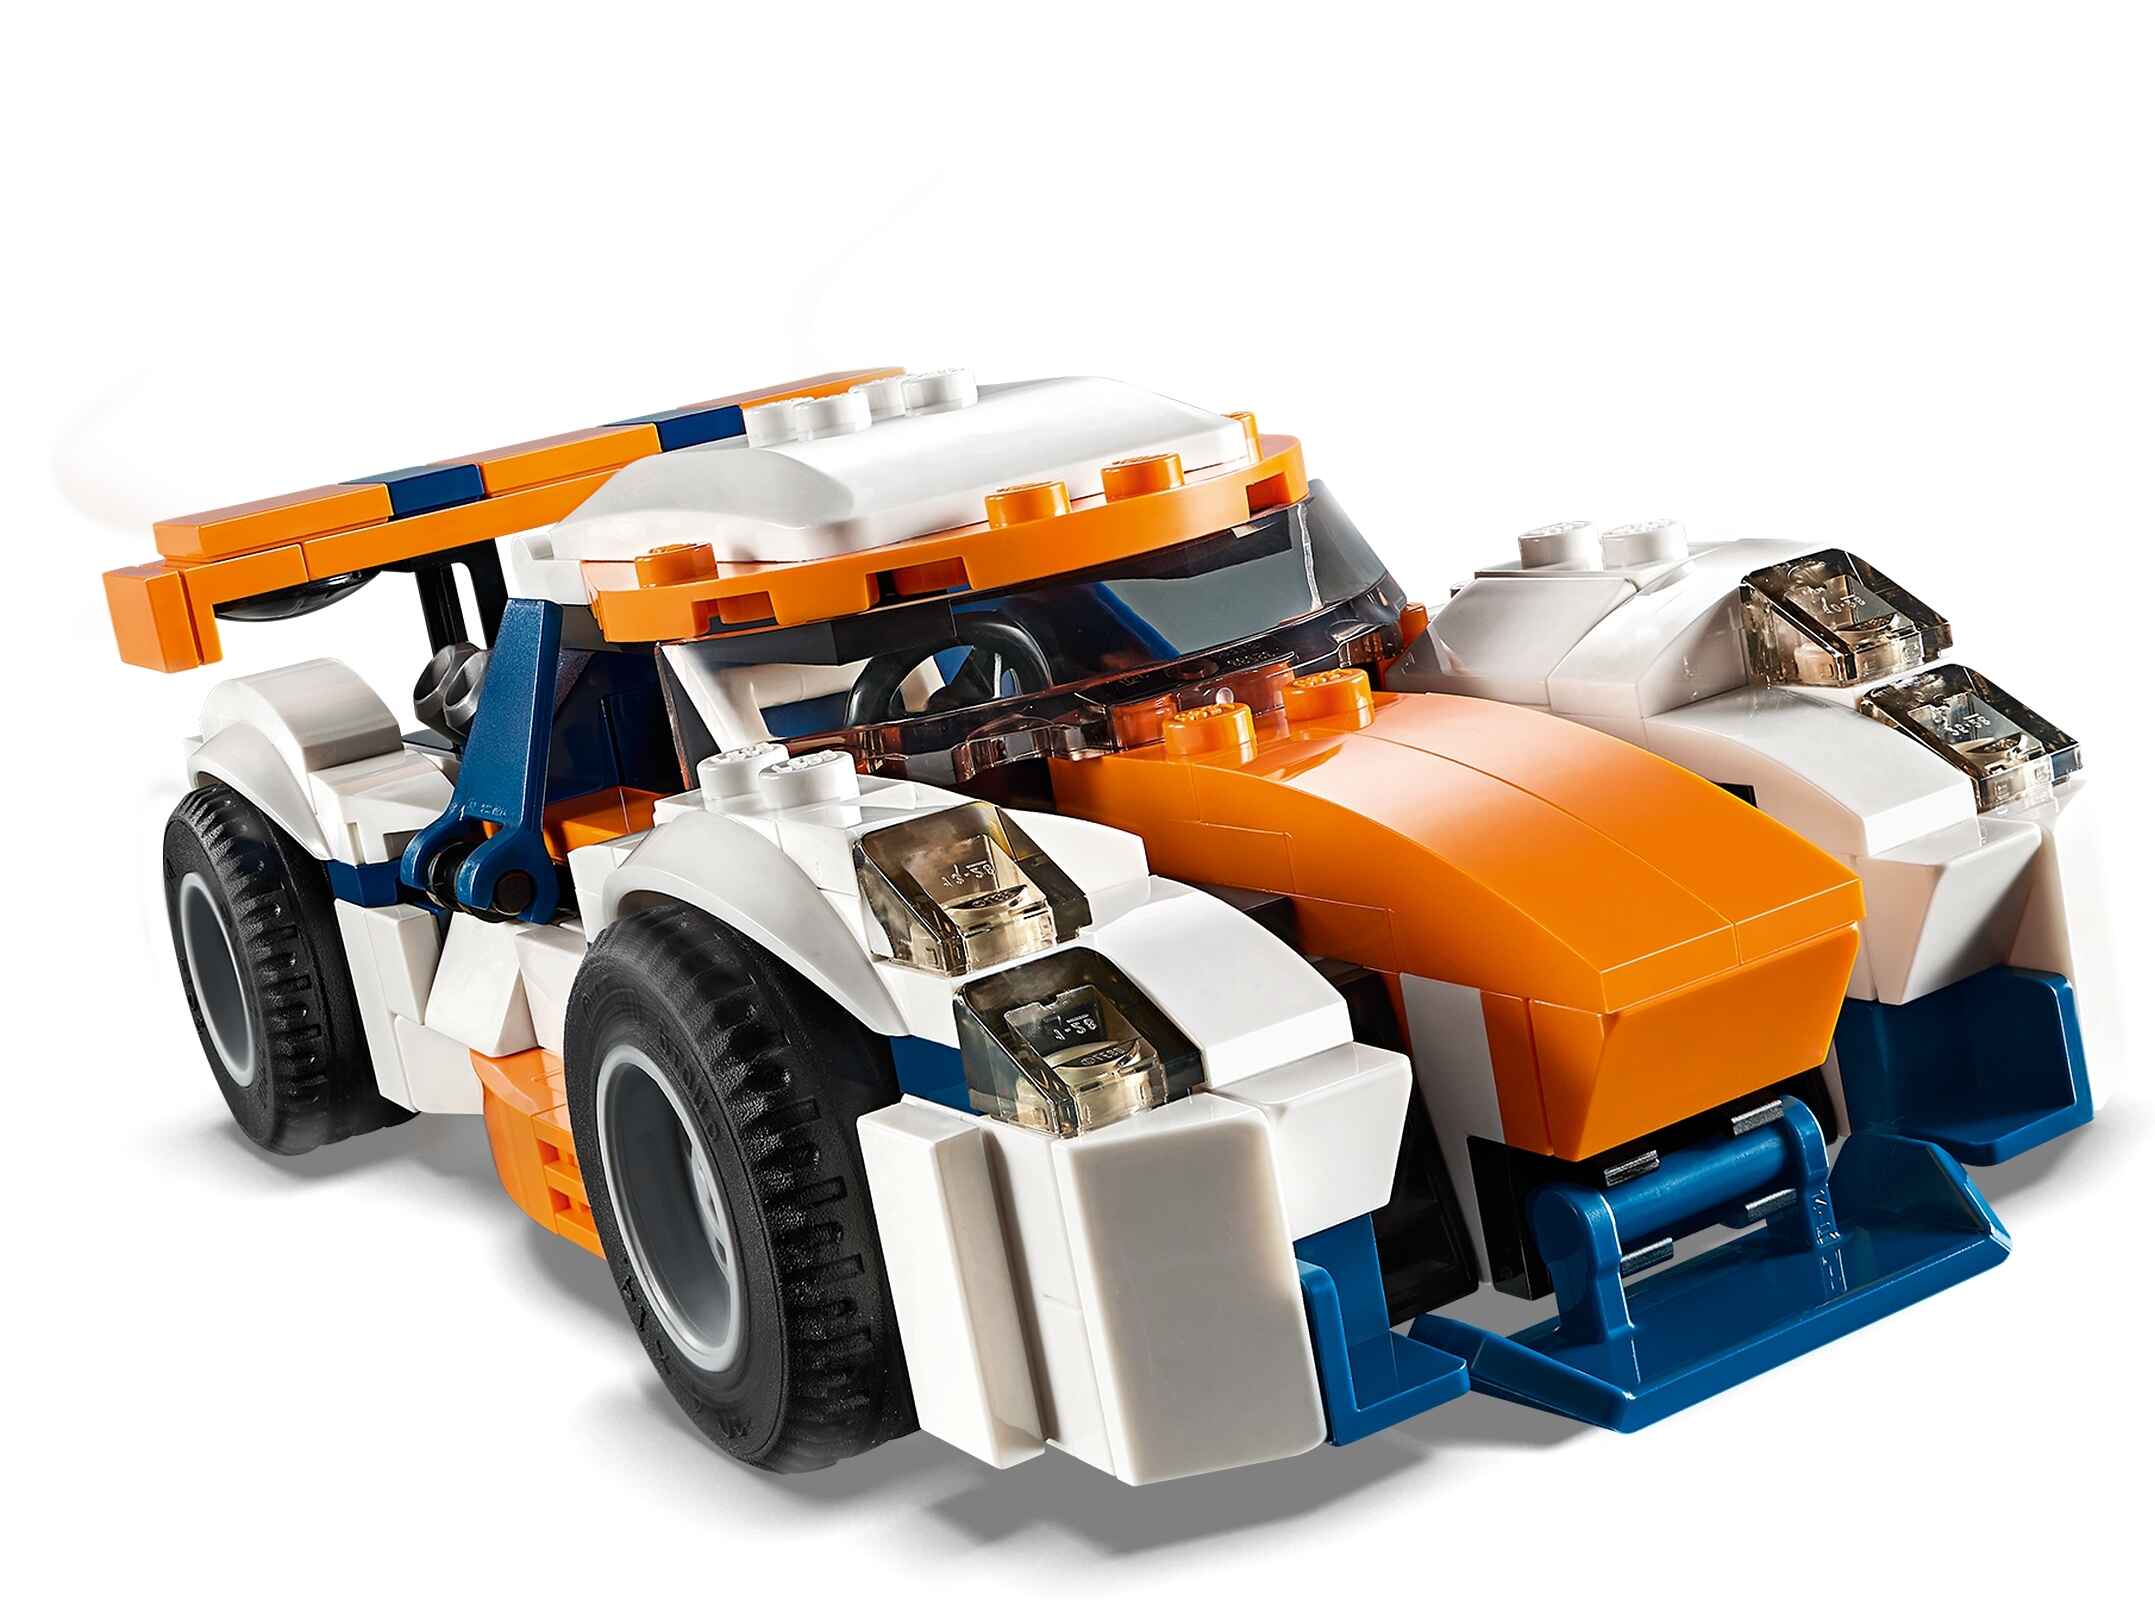 LEGO 31089 Creator 3 in 1 Rennwagen, Speedboot oder klassischer Rennwagen